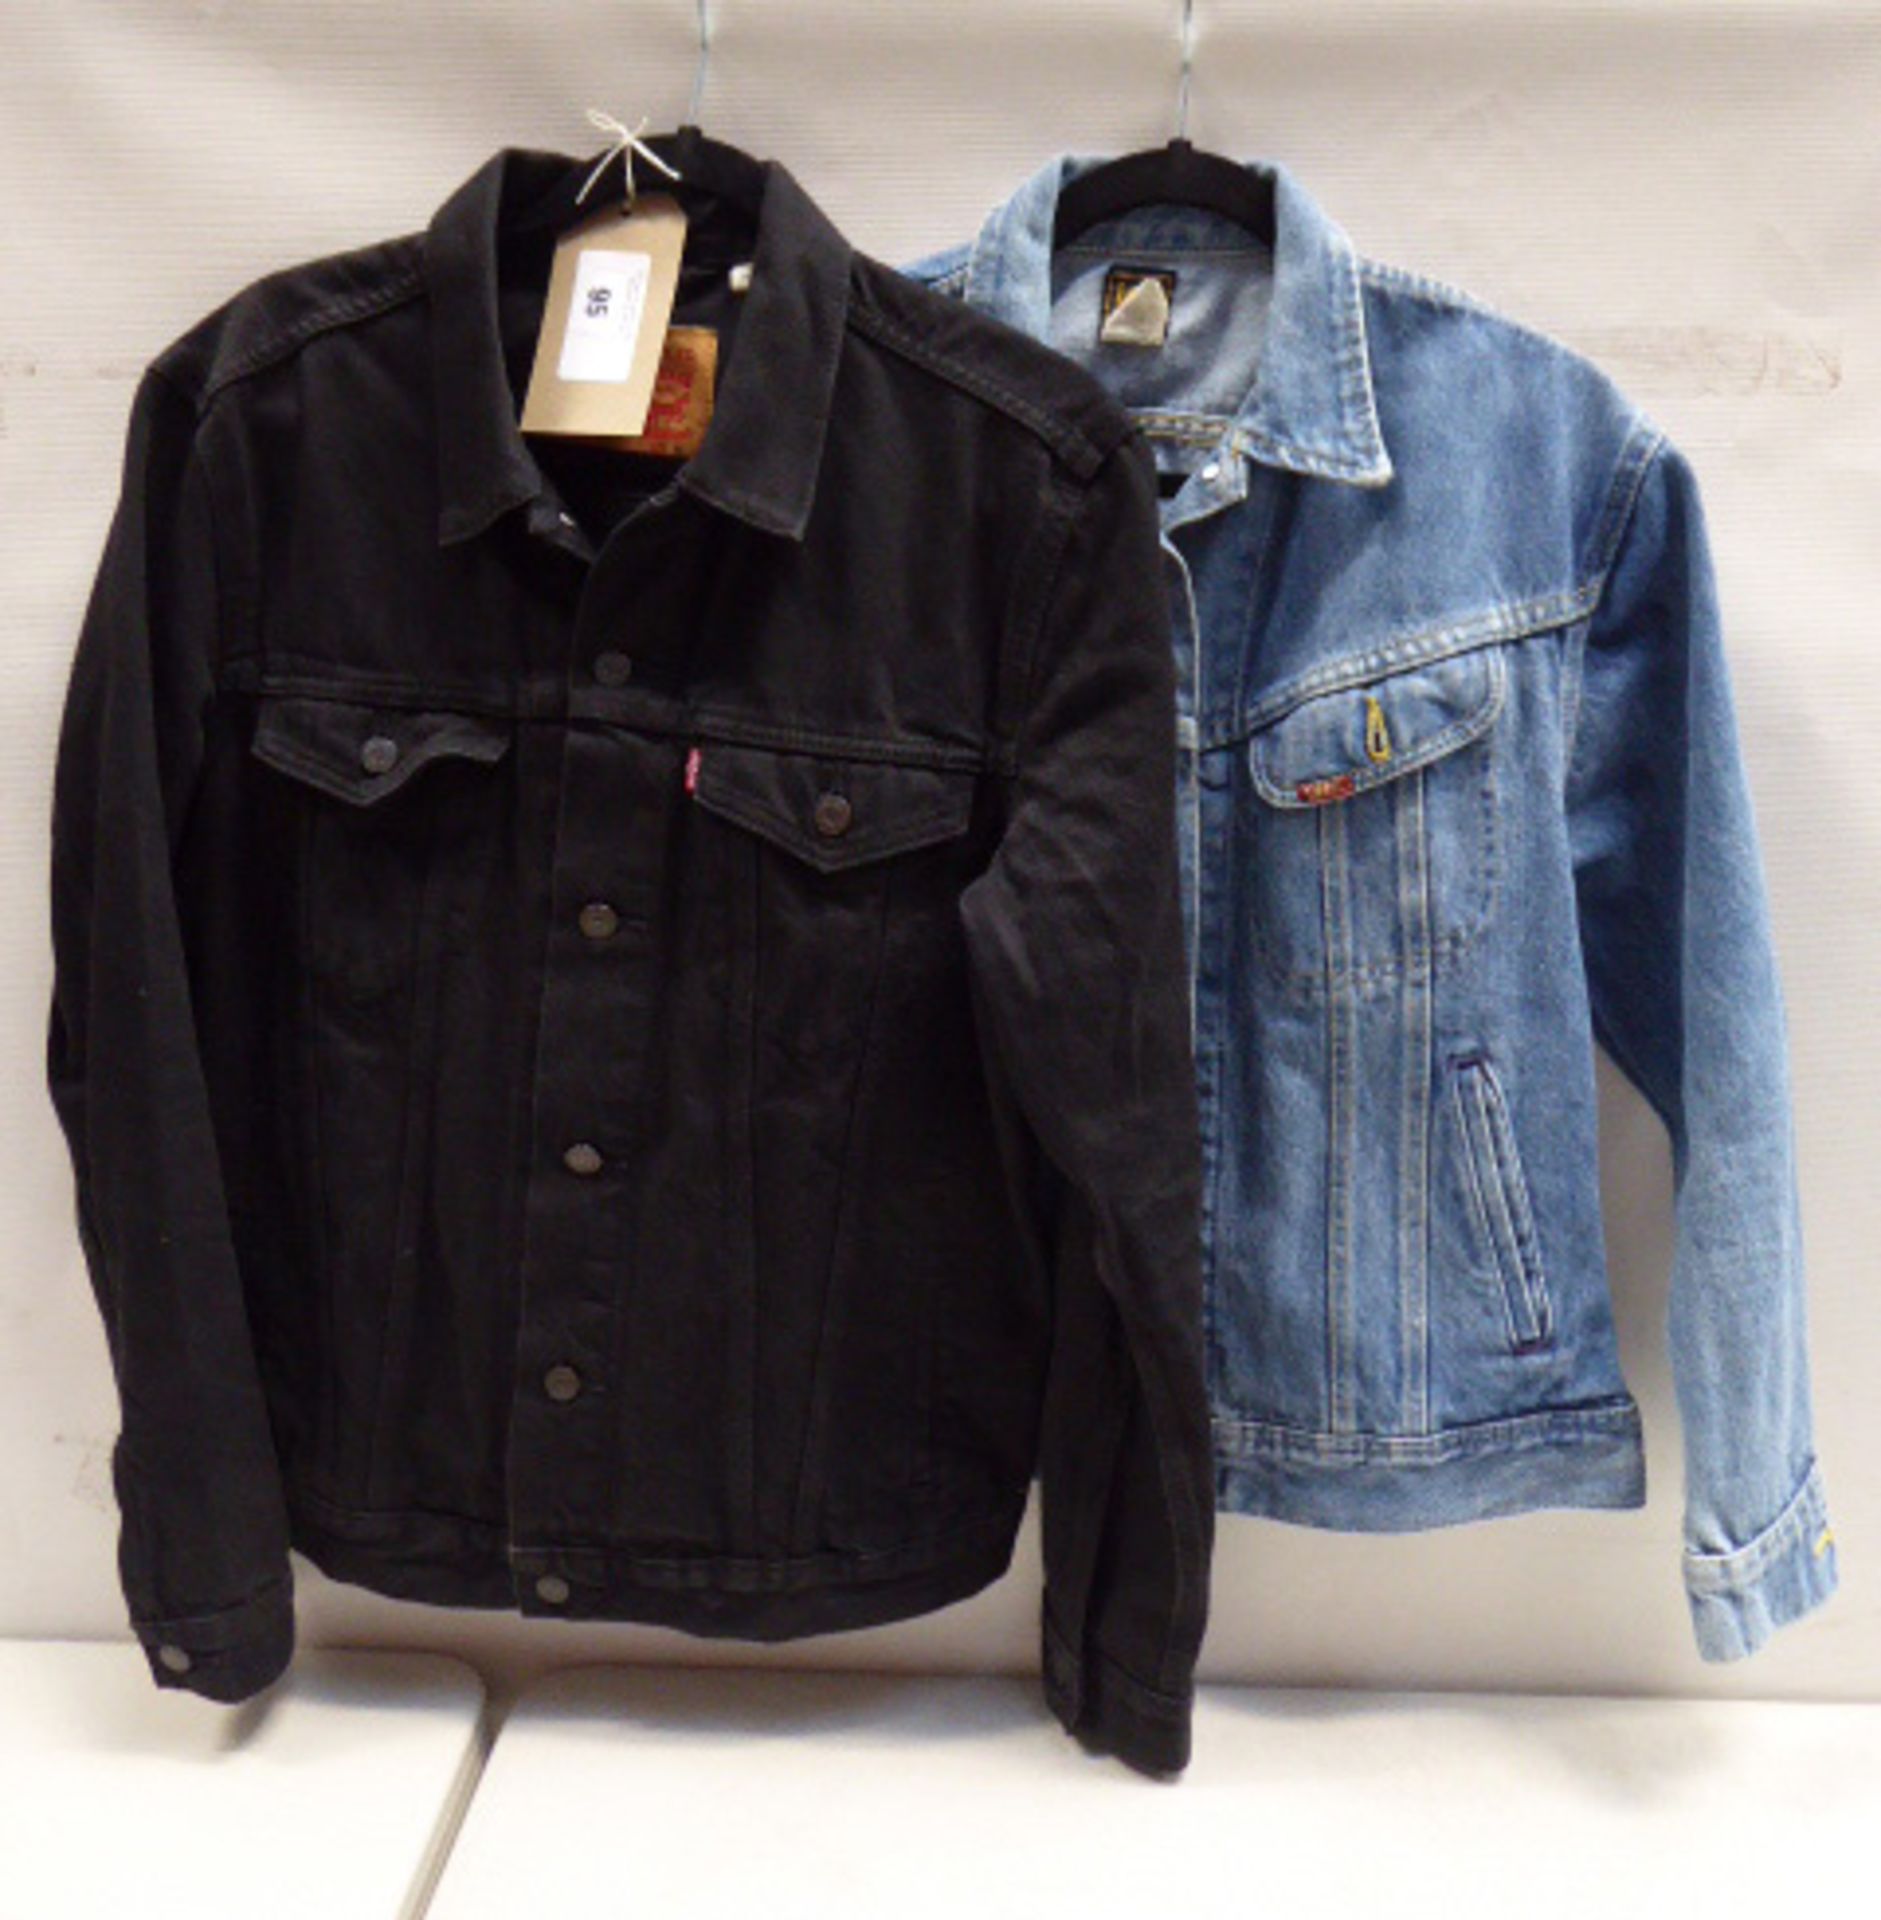 Levi's black denim jacket size medium (used) and Lee blue denim jacket size medium (used)